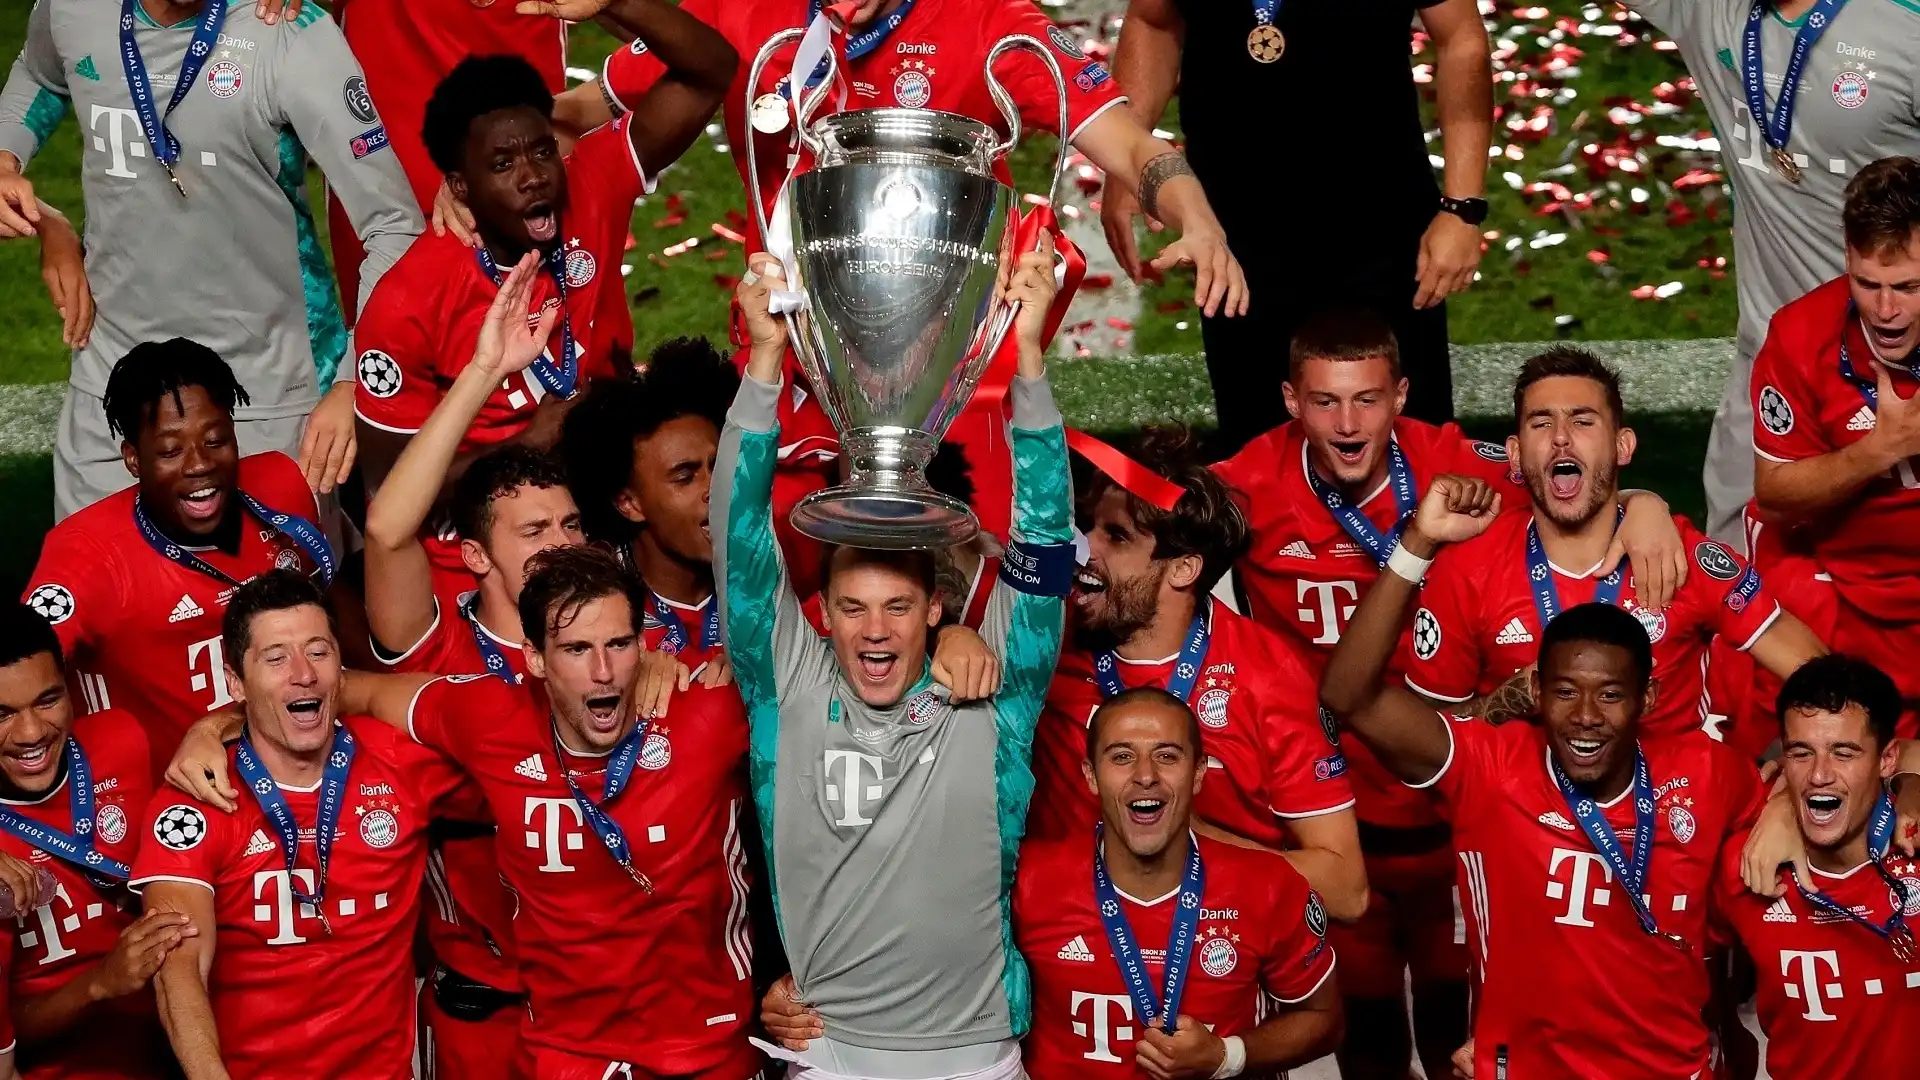 8) Bayern Monaco (Germania): 14 trofei (6 Champions League, 1 Coppa delle Coppe, 1 Coppa Uefa, 2 Supercoppe Europee, 2 Coppe Intercontinentali, 2 Coppe del mondo per club)